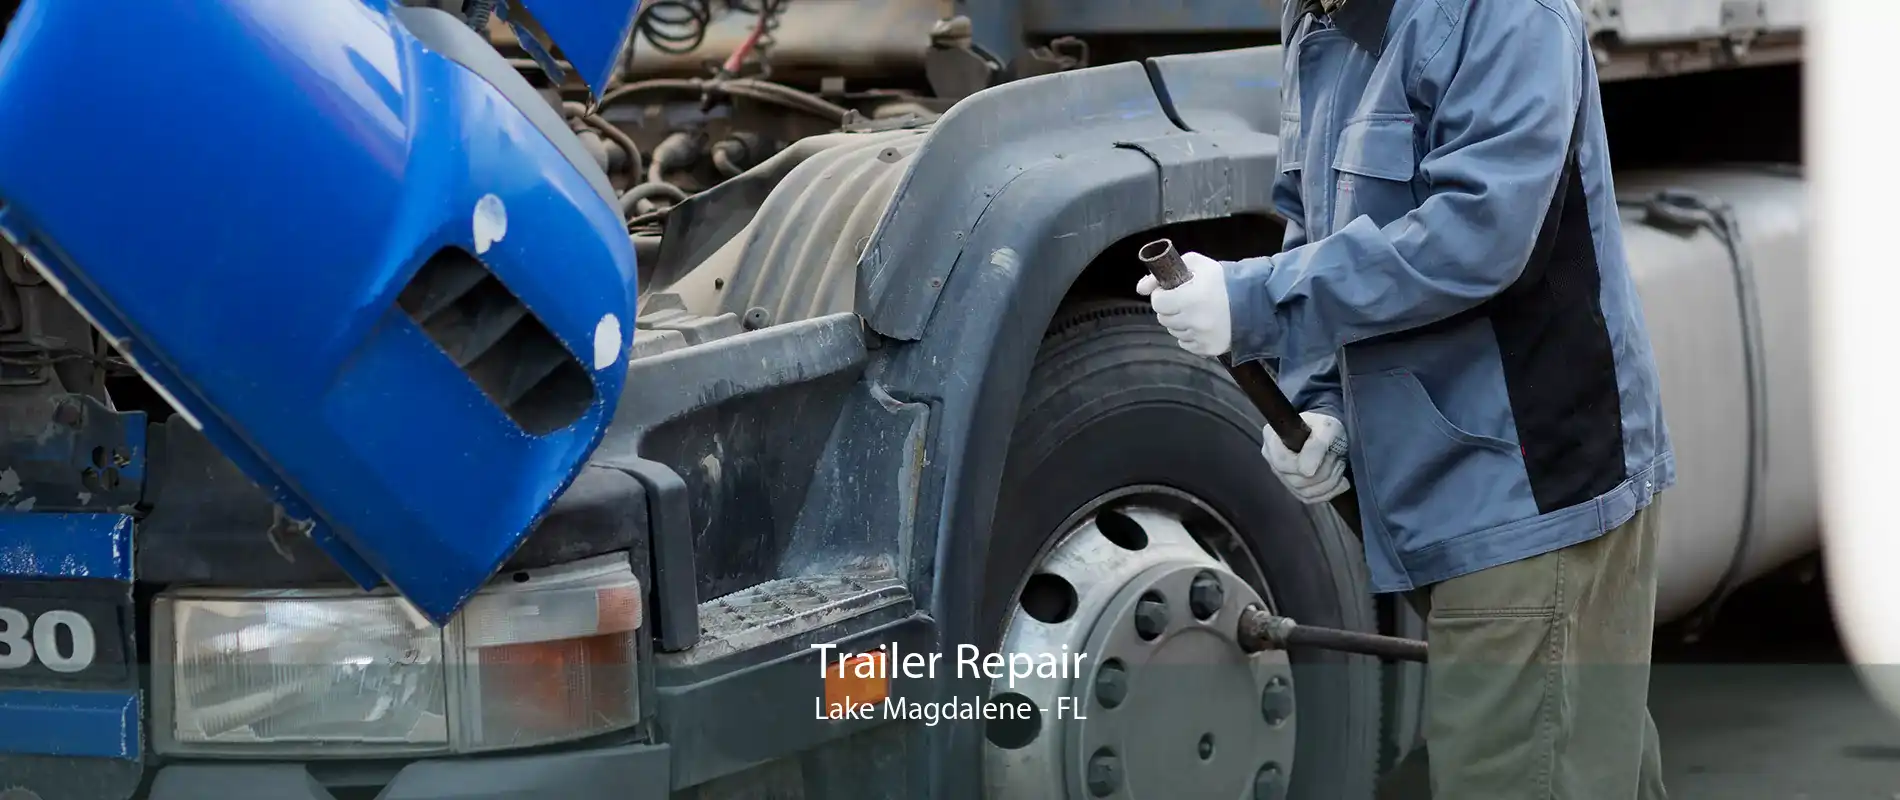 Trailer Repair Lake Magdalene - FL